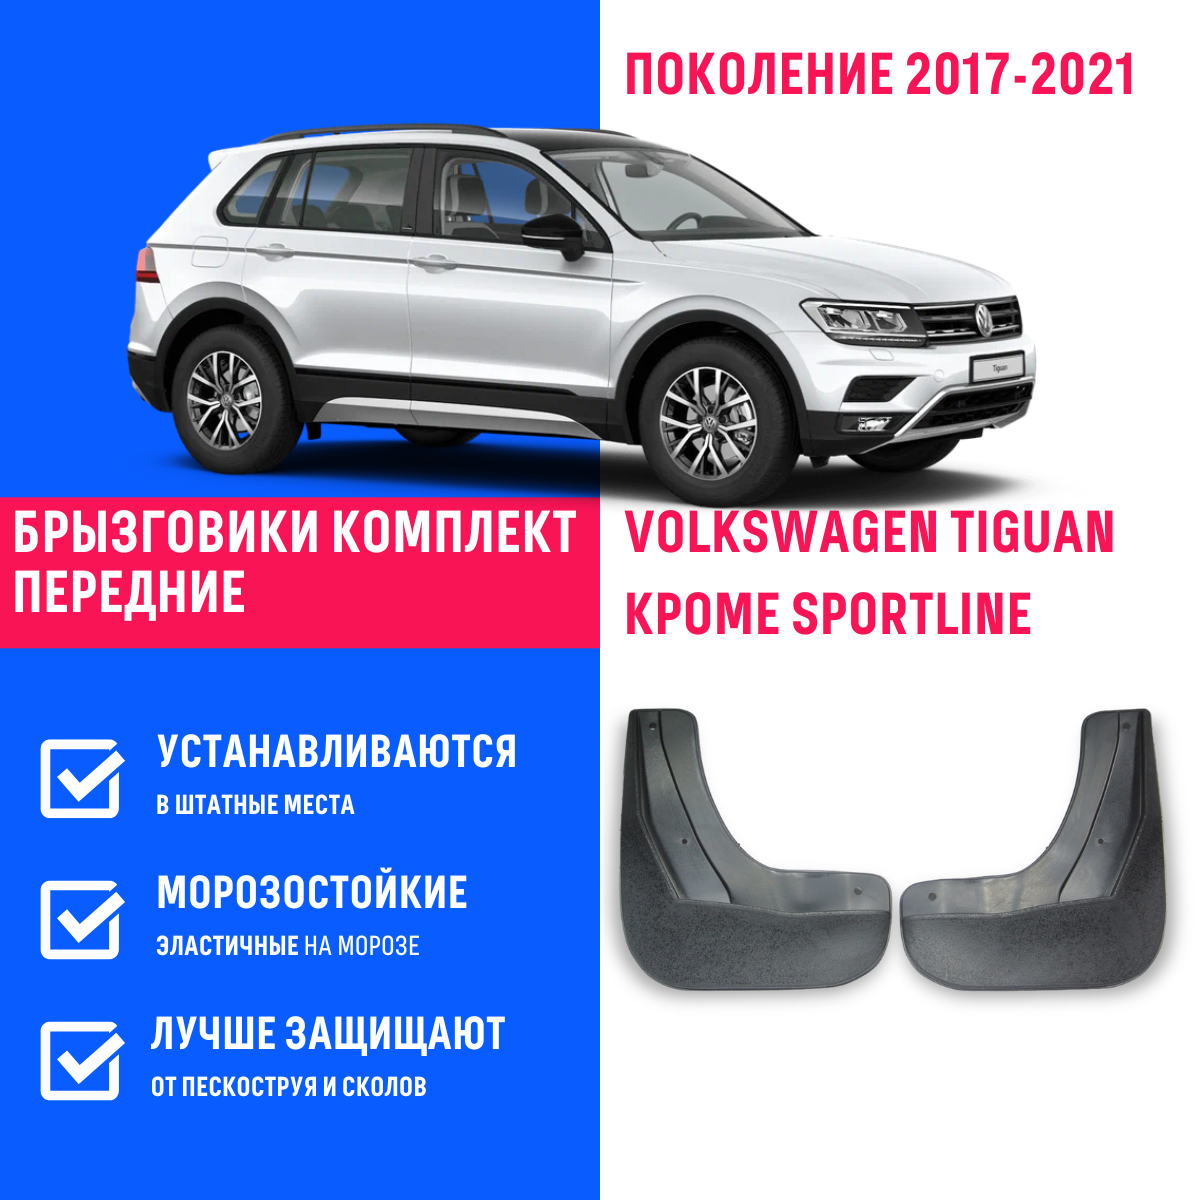 Брызговики передние Volkswagen Tiguan Фольксваген Тигуан поколение 2017-2021